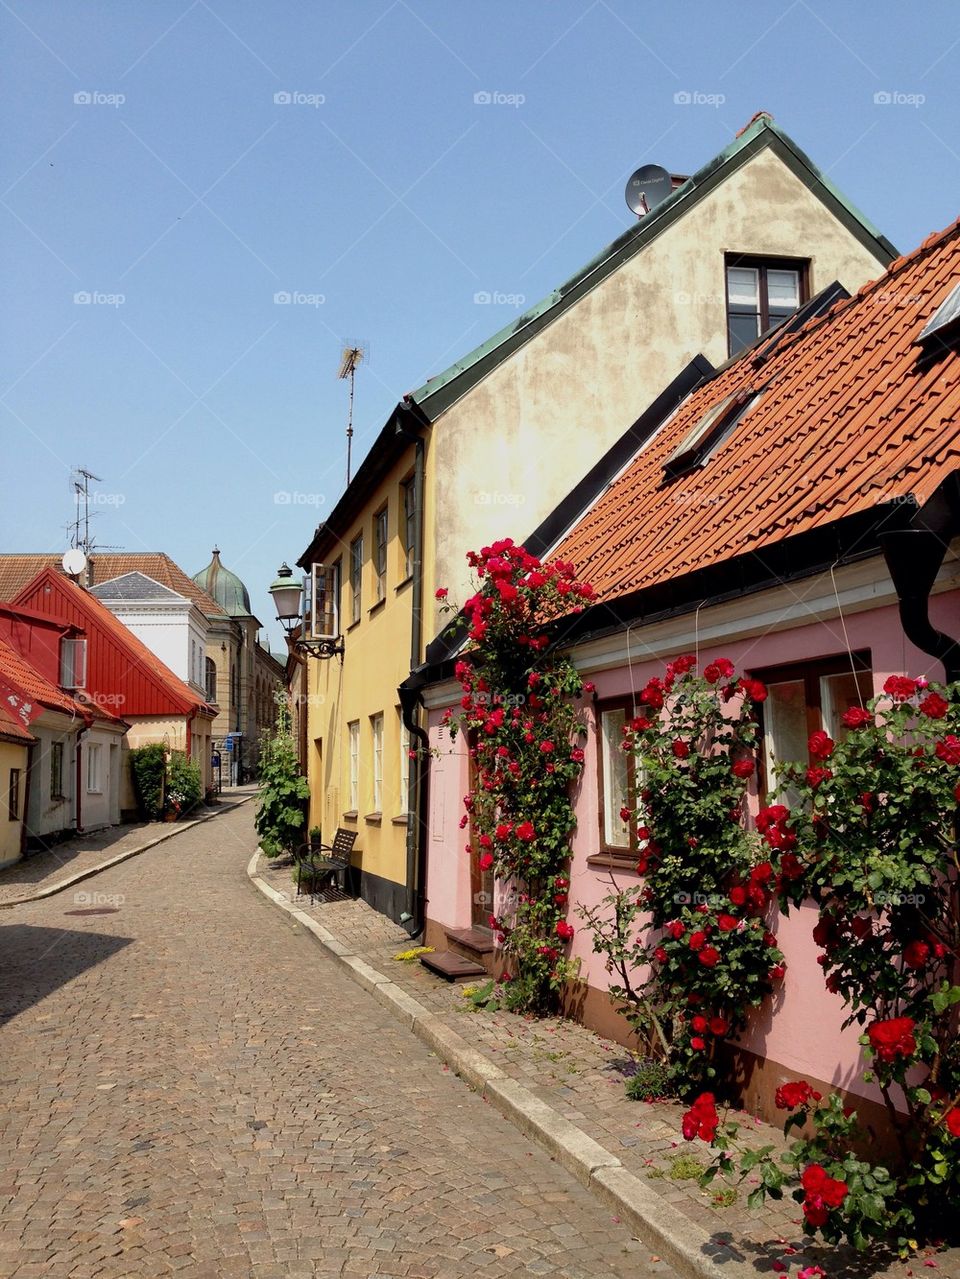 Street in Ystad.